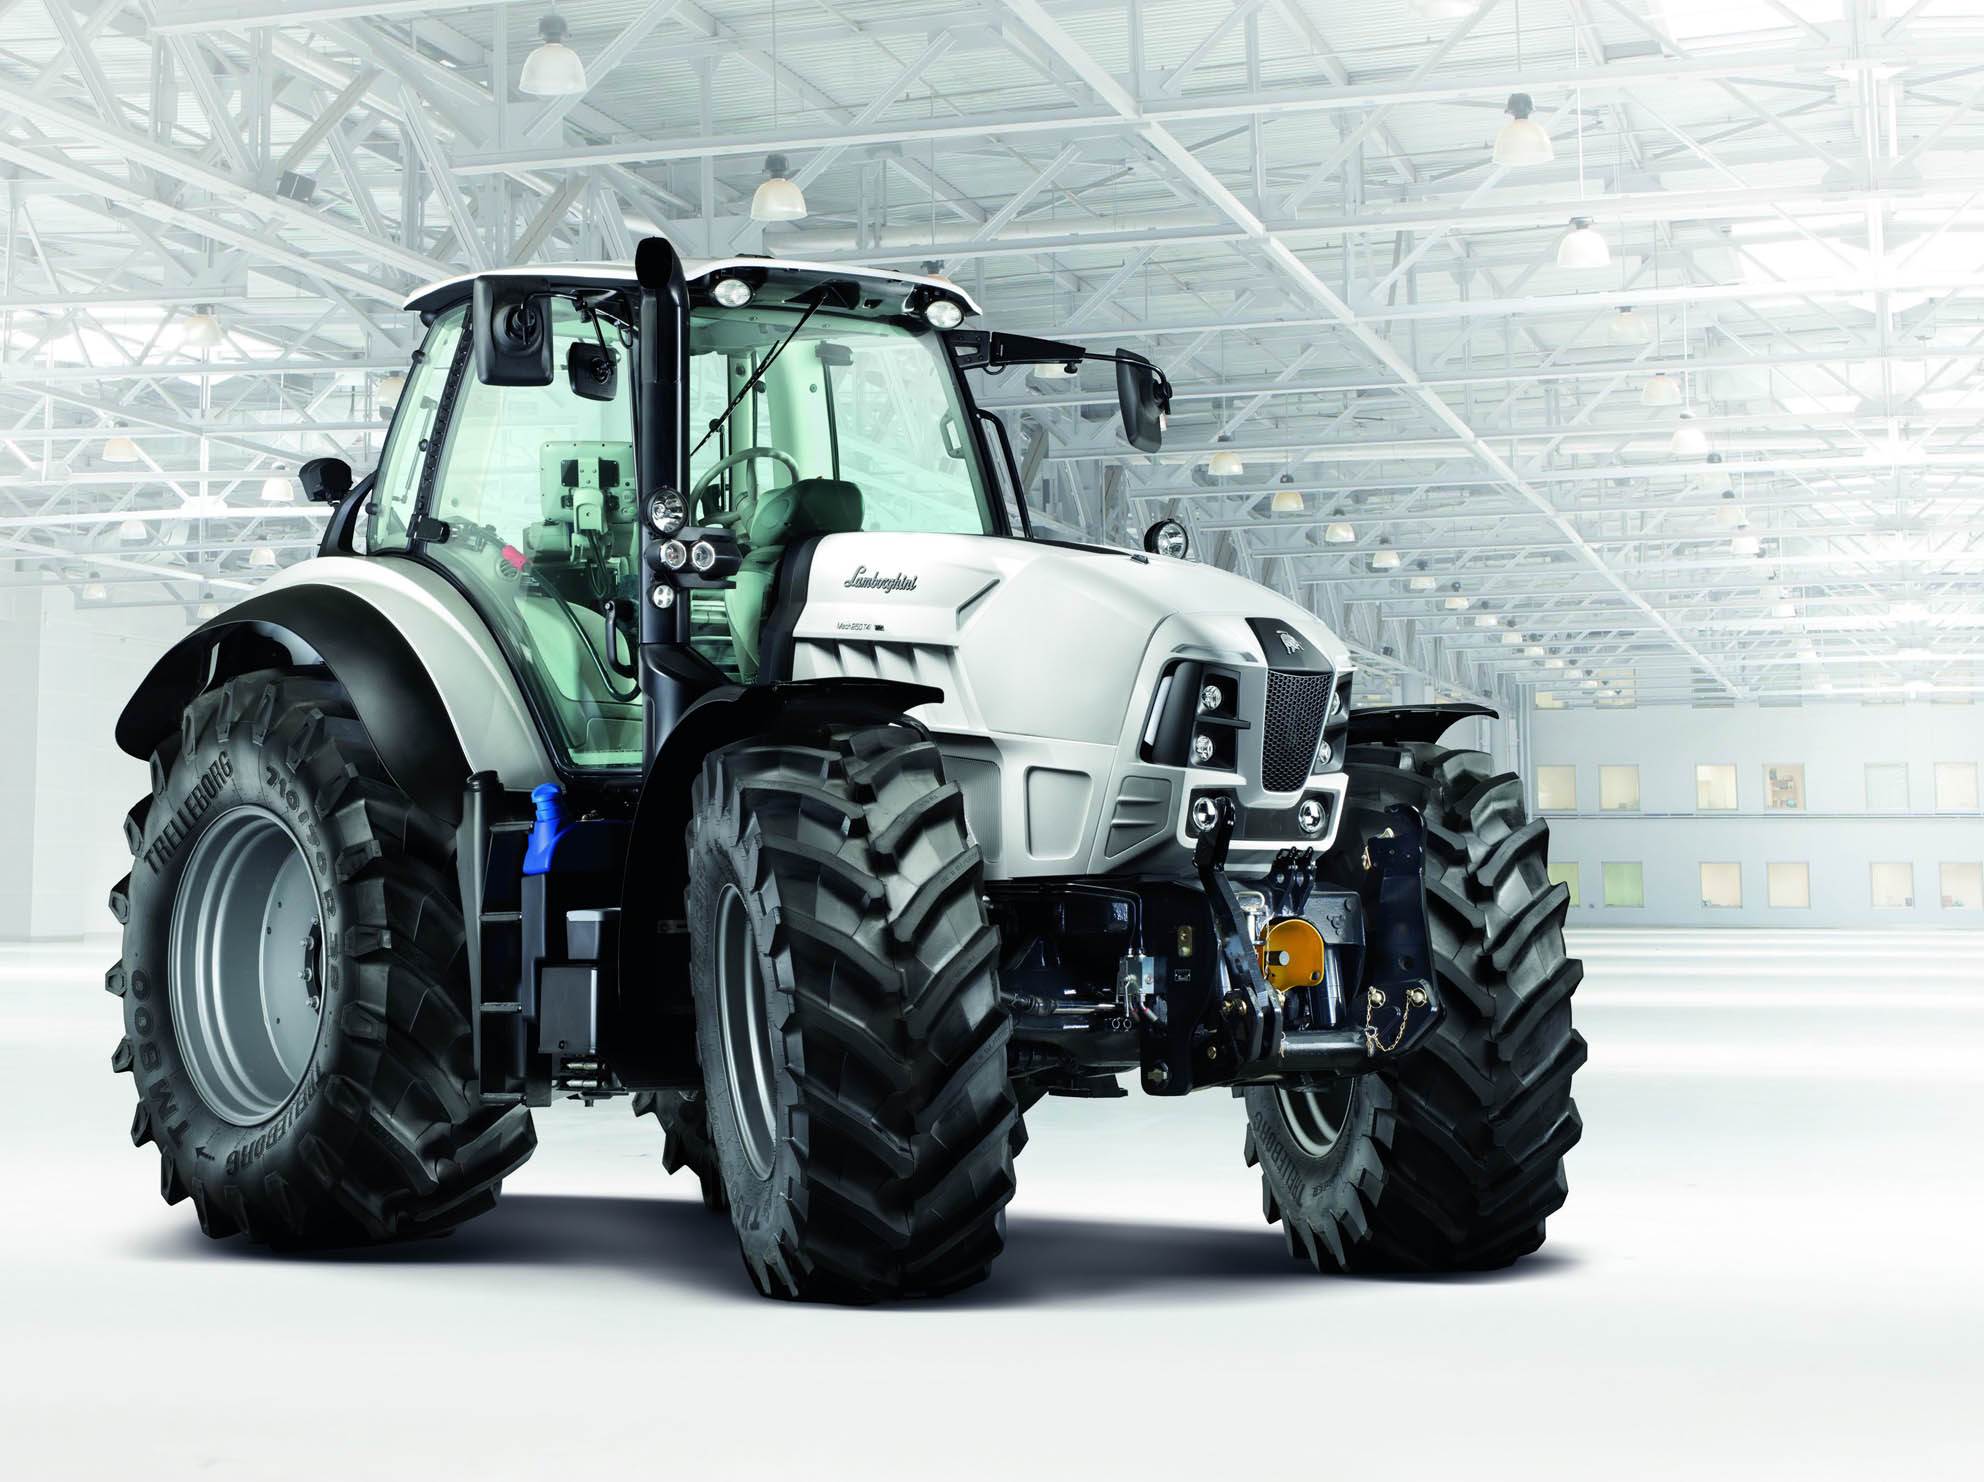 Hella helps Tractors upgrade its lights Autocar Professional